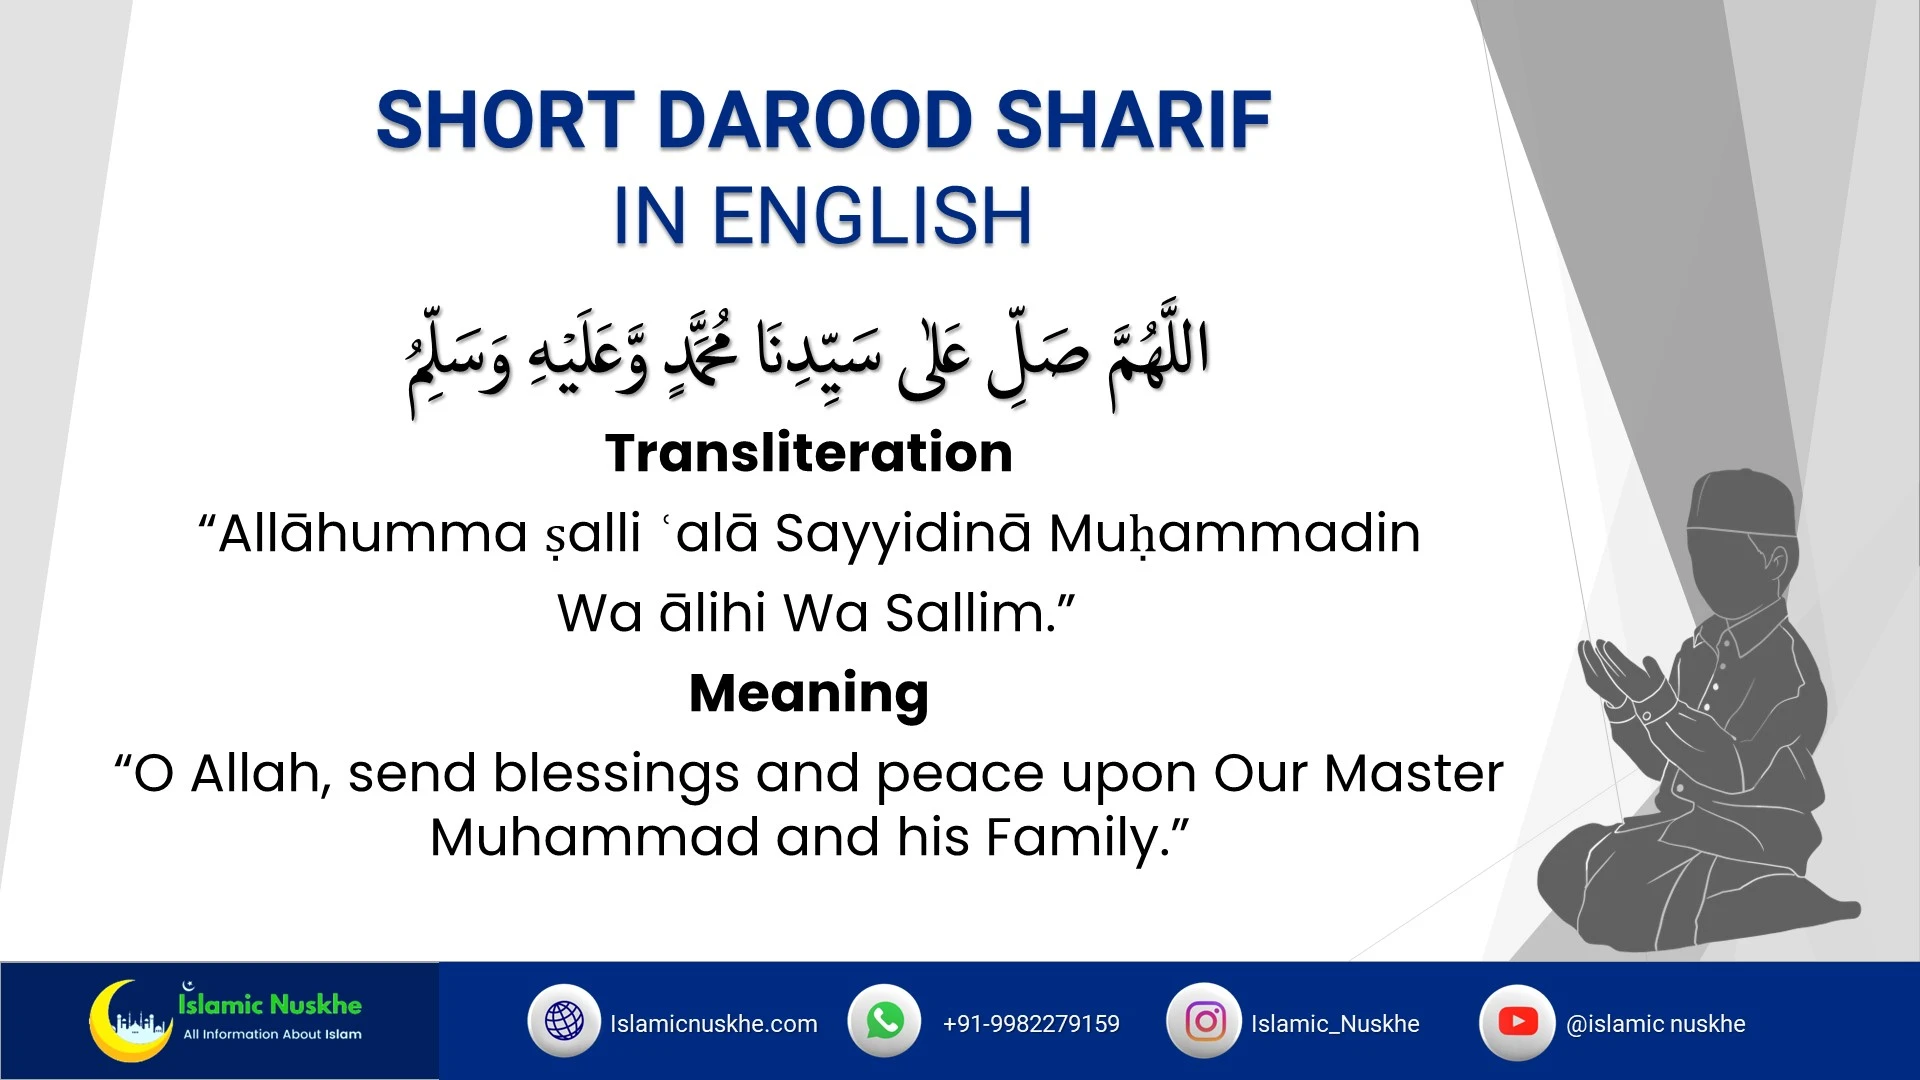 Short Darood Sharif in English